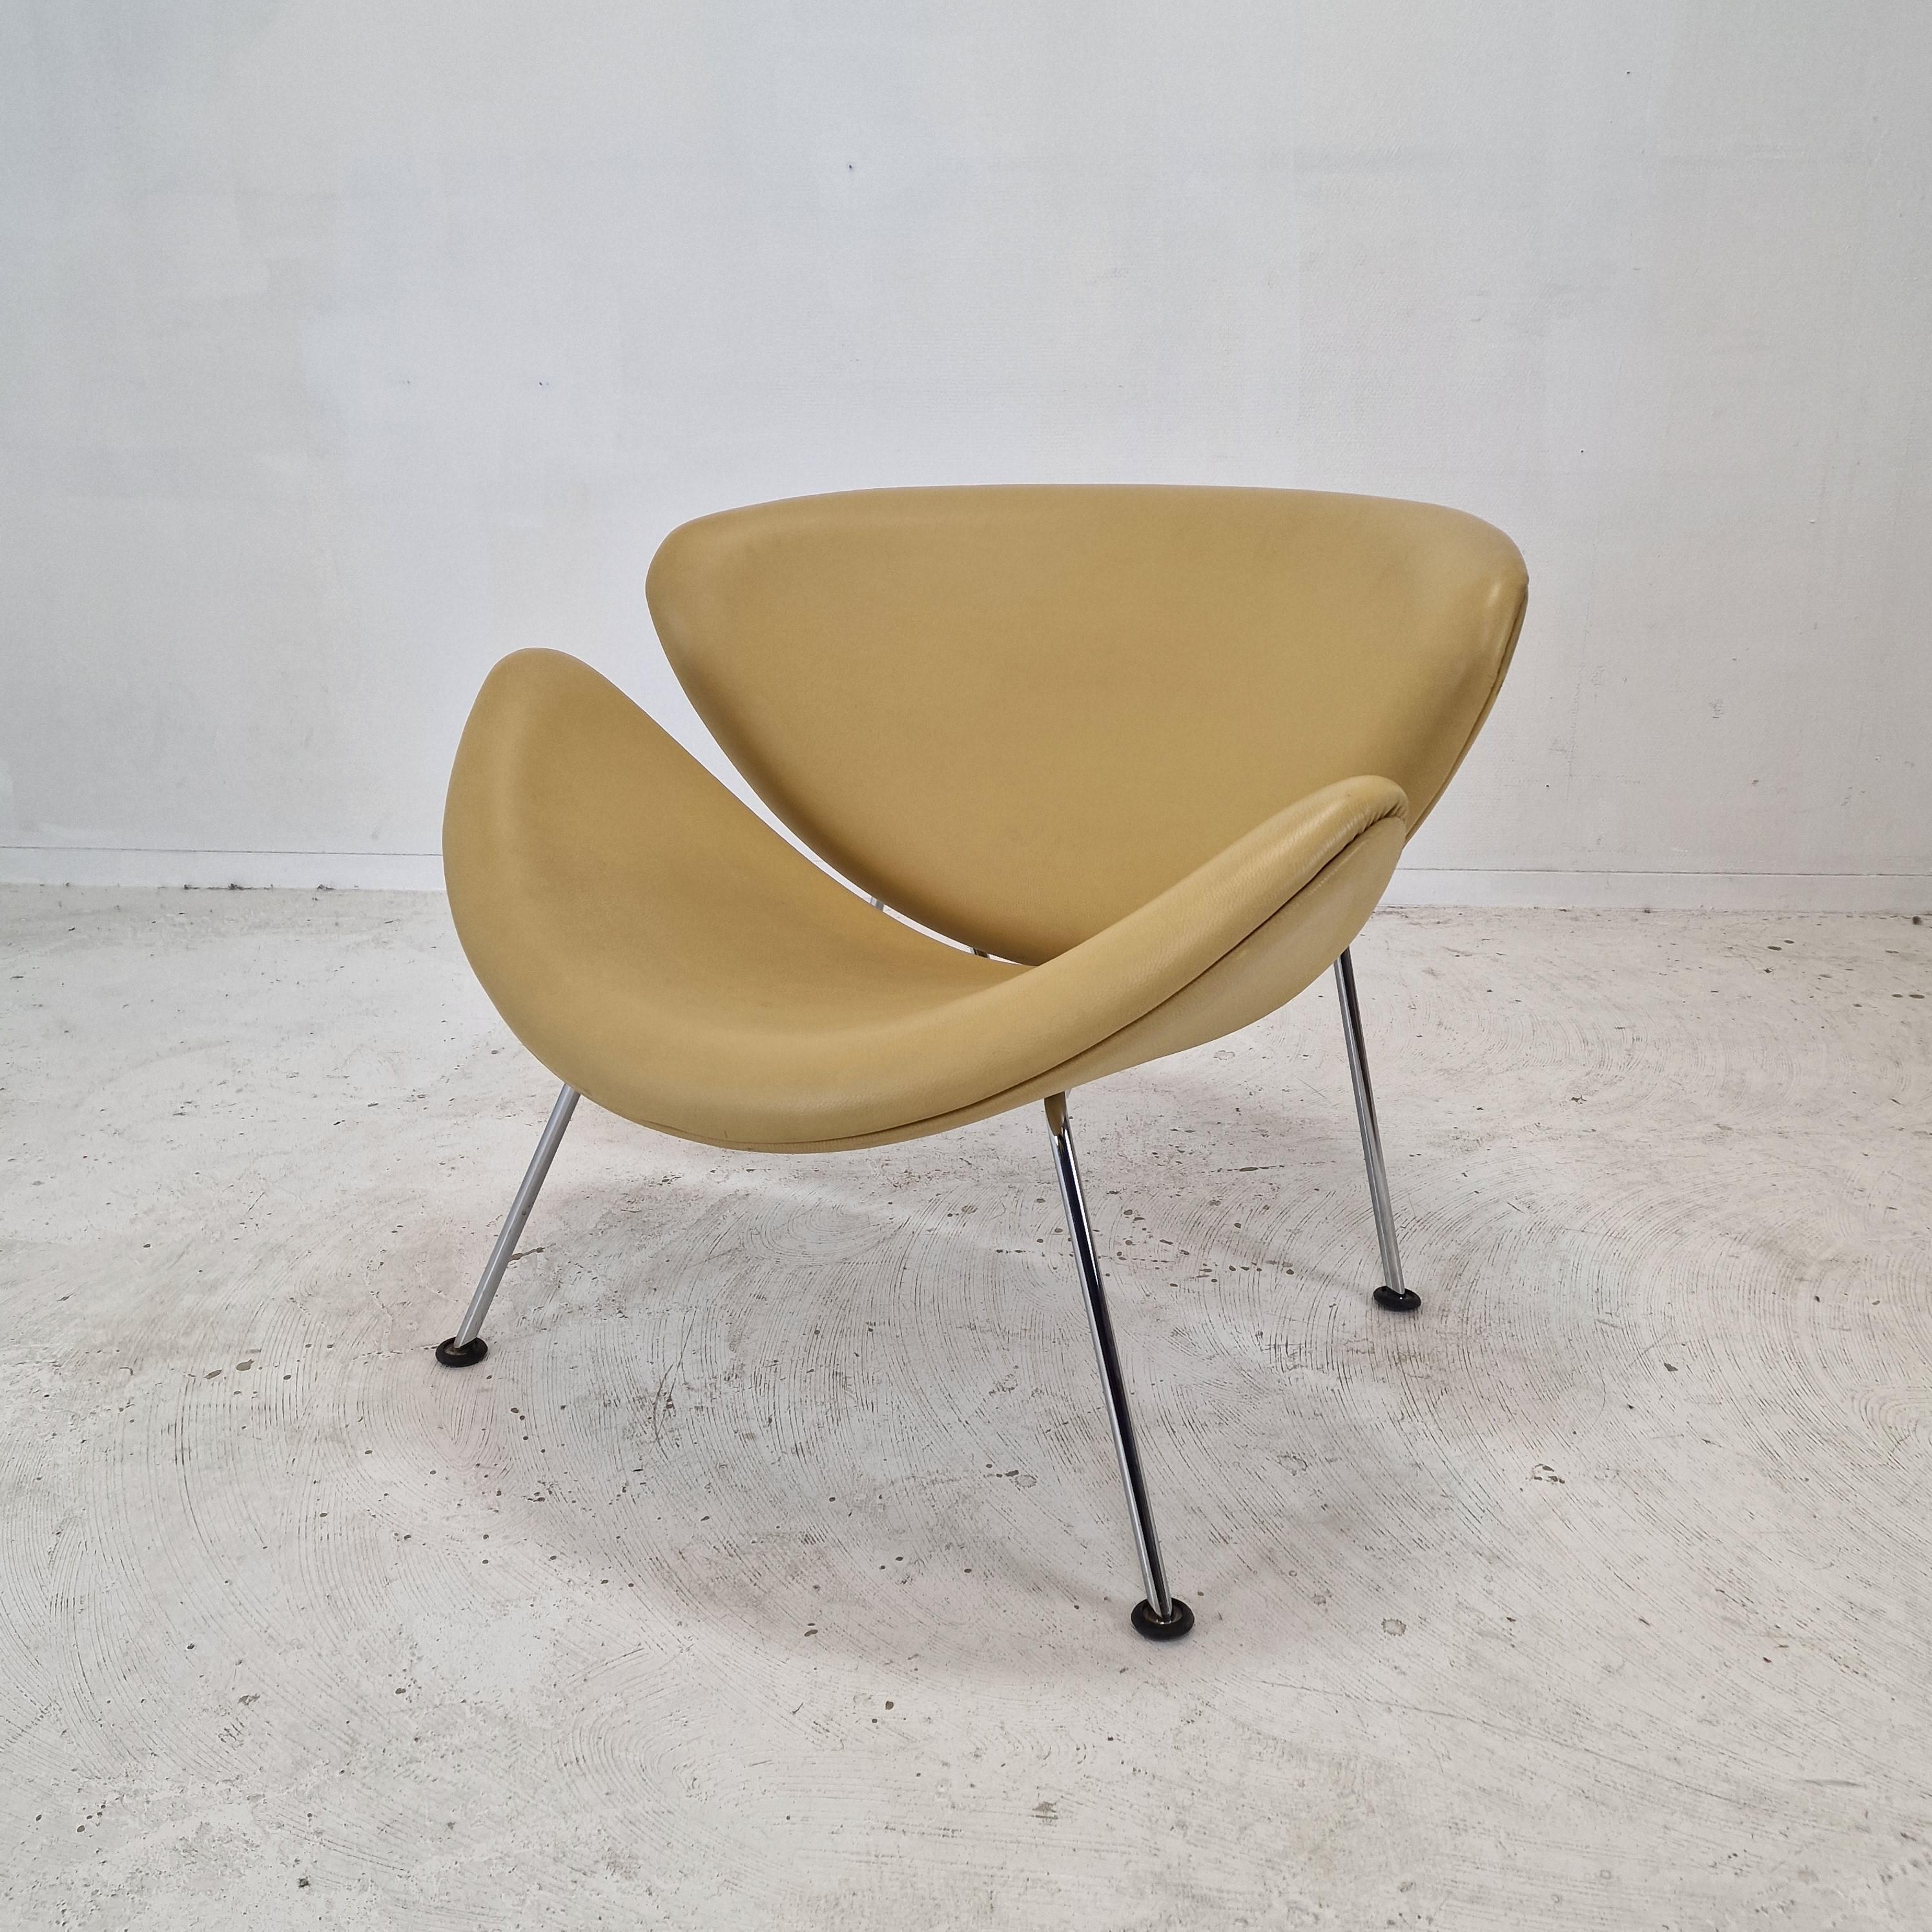 La célèbre chaise à tranches orange Artifort de Pierre Paulin, conçue dans les années 60.
Cette chaise originale aux pieds chromés a été produite dans les années 80.

C'est une chaise mignonne et très confortable.

Il est doté d'un cuir d'origine de